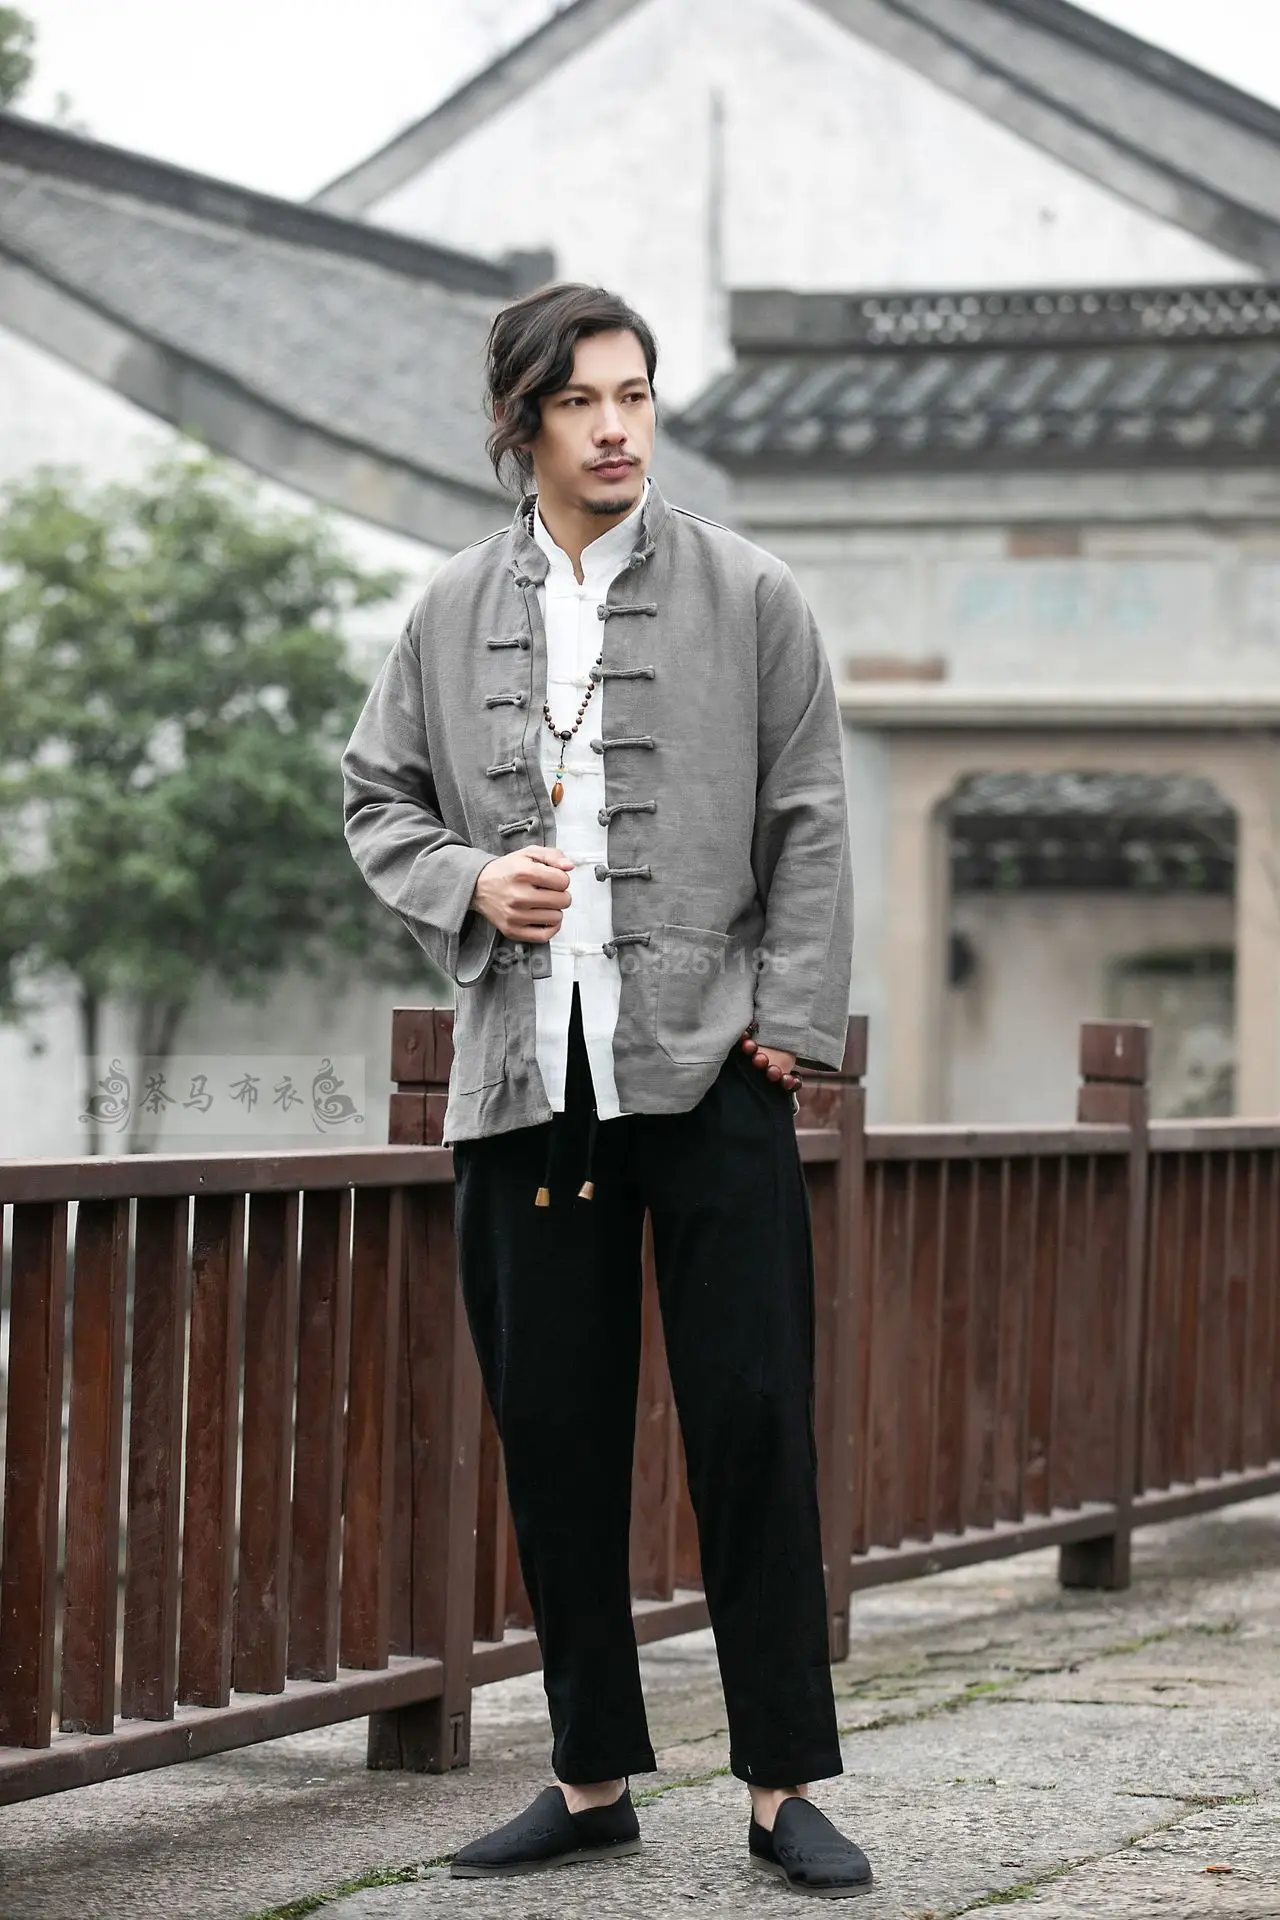 Осенние мужские льняные куртки Hanfu в китайском стиле, традиционные топы, костюм Tang, Свободная блуза с длинными рукавами, Восточная одежда Kung Fu Asia